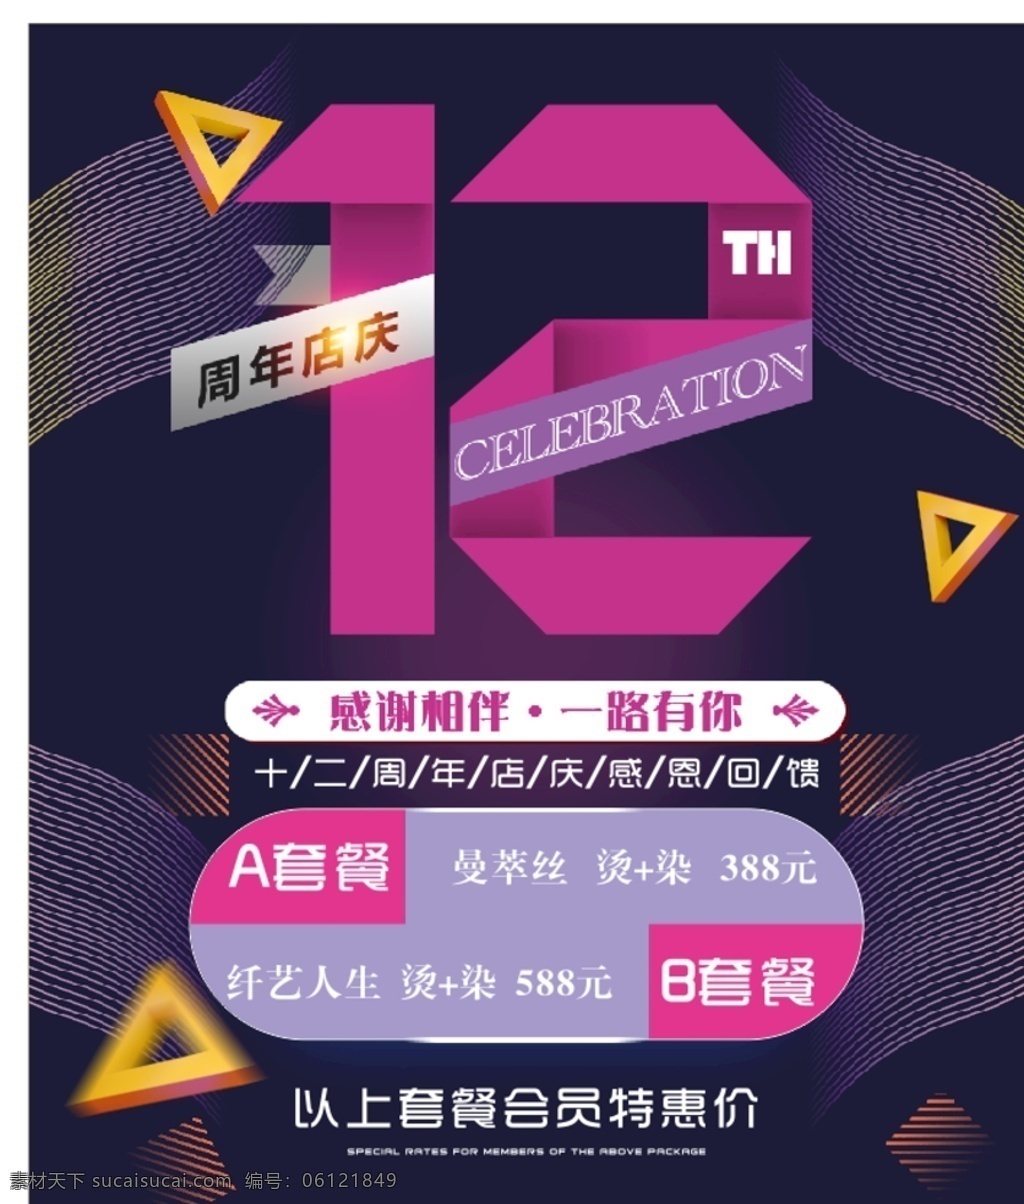 12周年店庆 喔喔 豆豆 嗯嗯 卡卡 文化艺术 节日庆祝